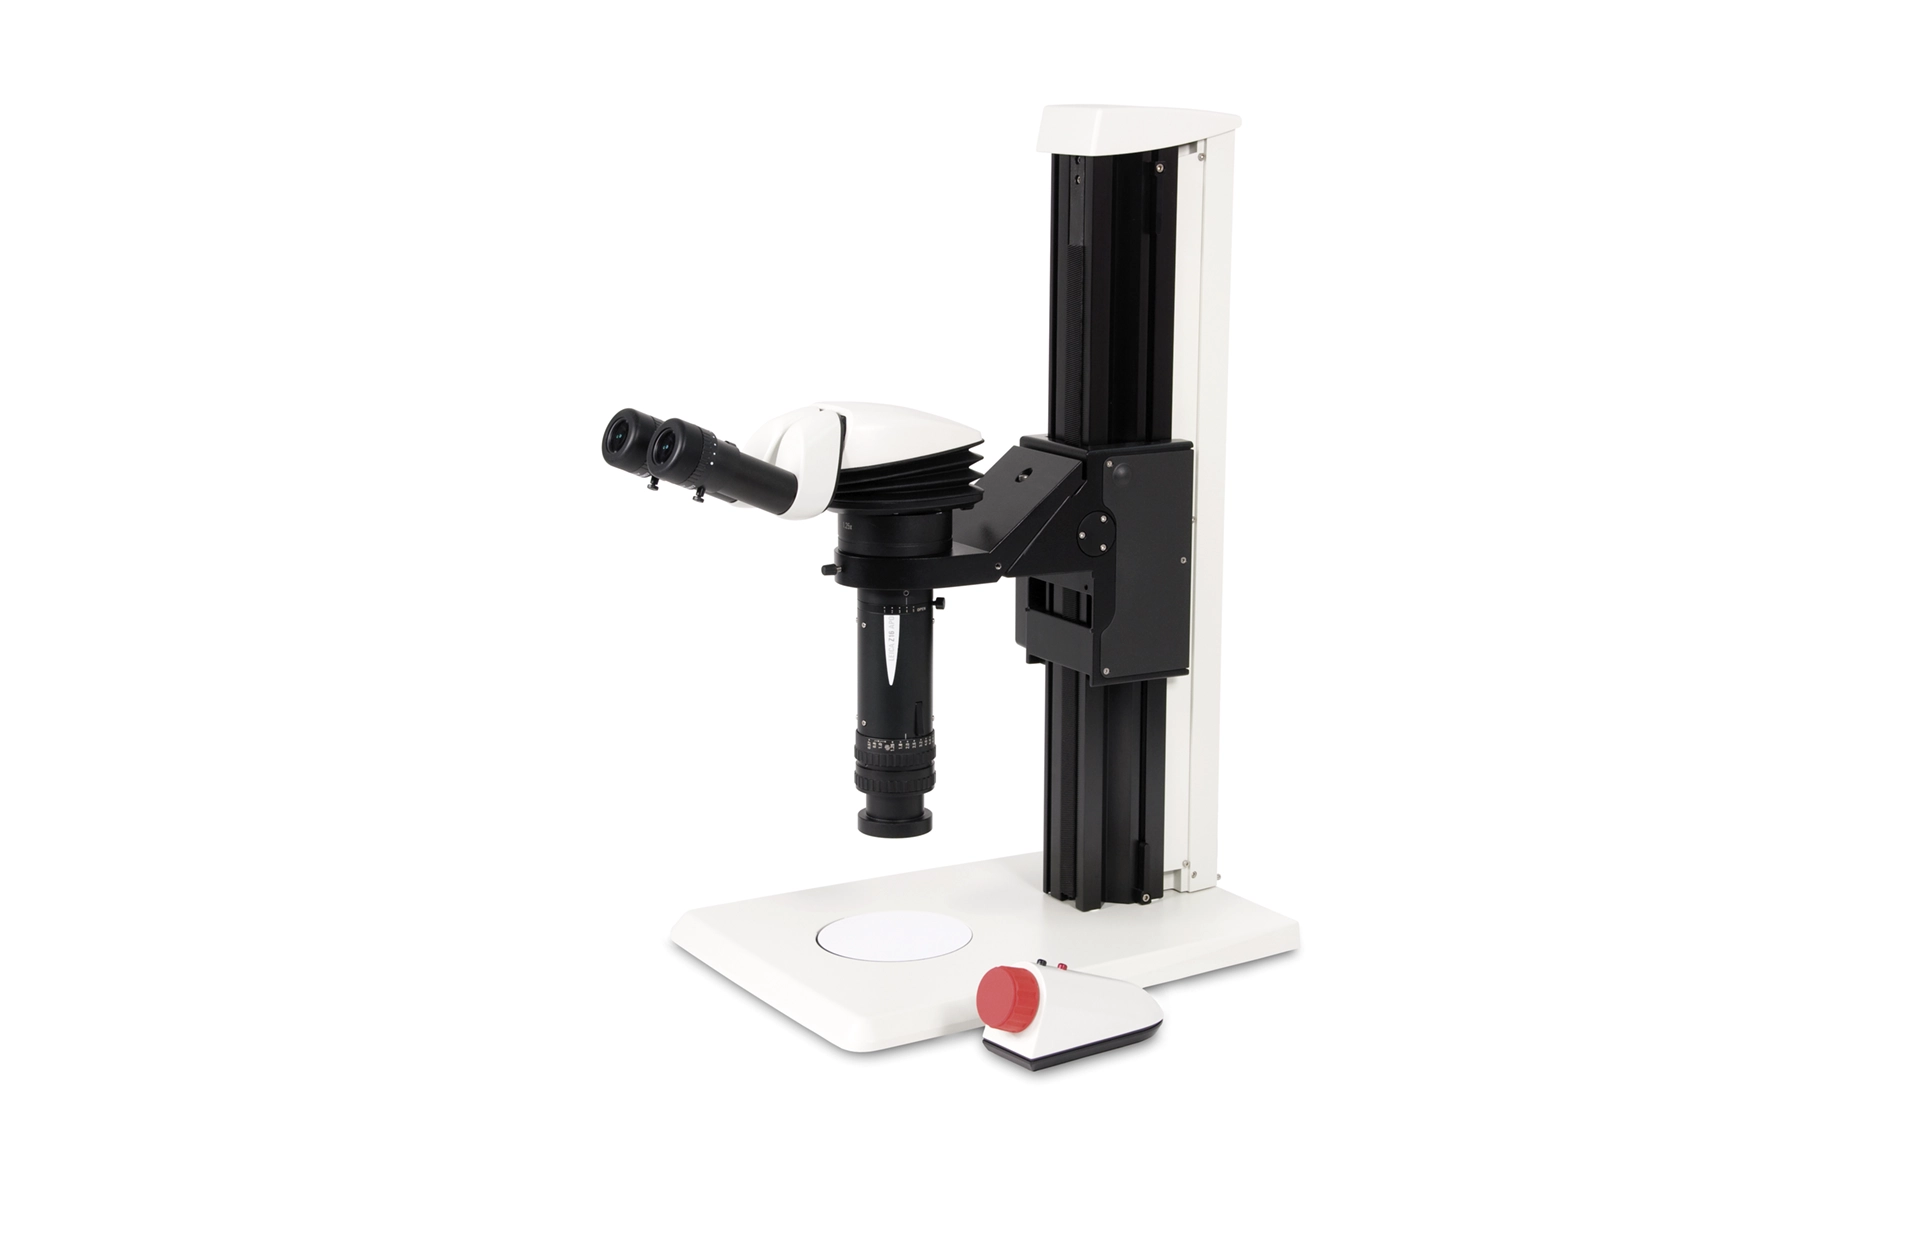 Leica Z16 APO Makroskop mit Binotubus und Handsteuerung, rechtsseitig